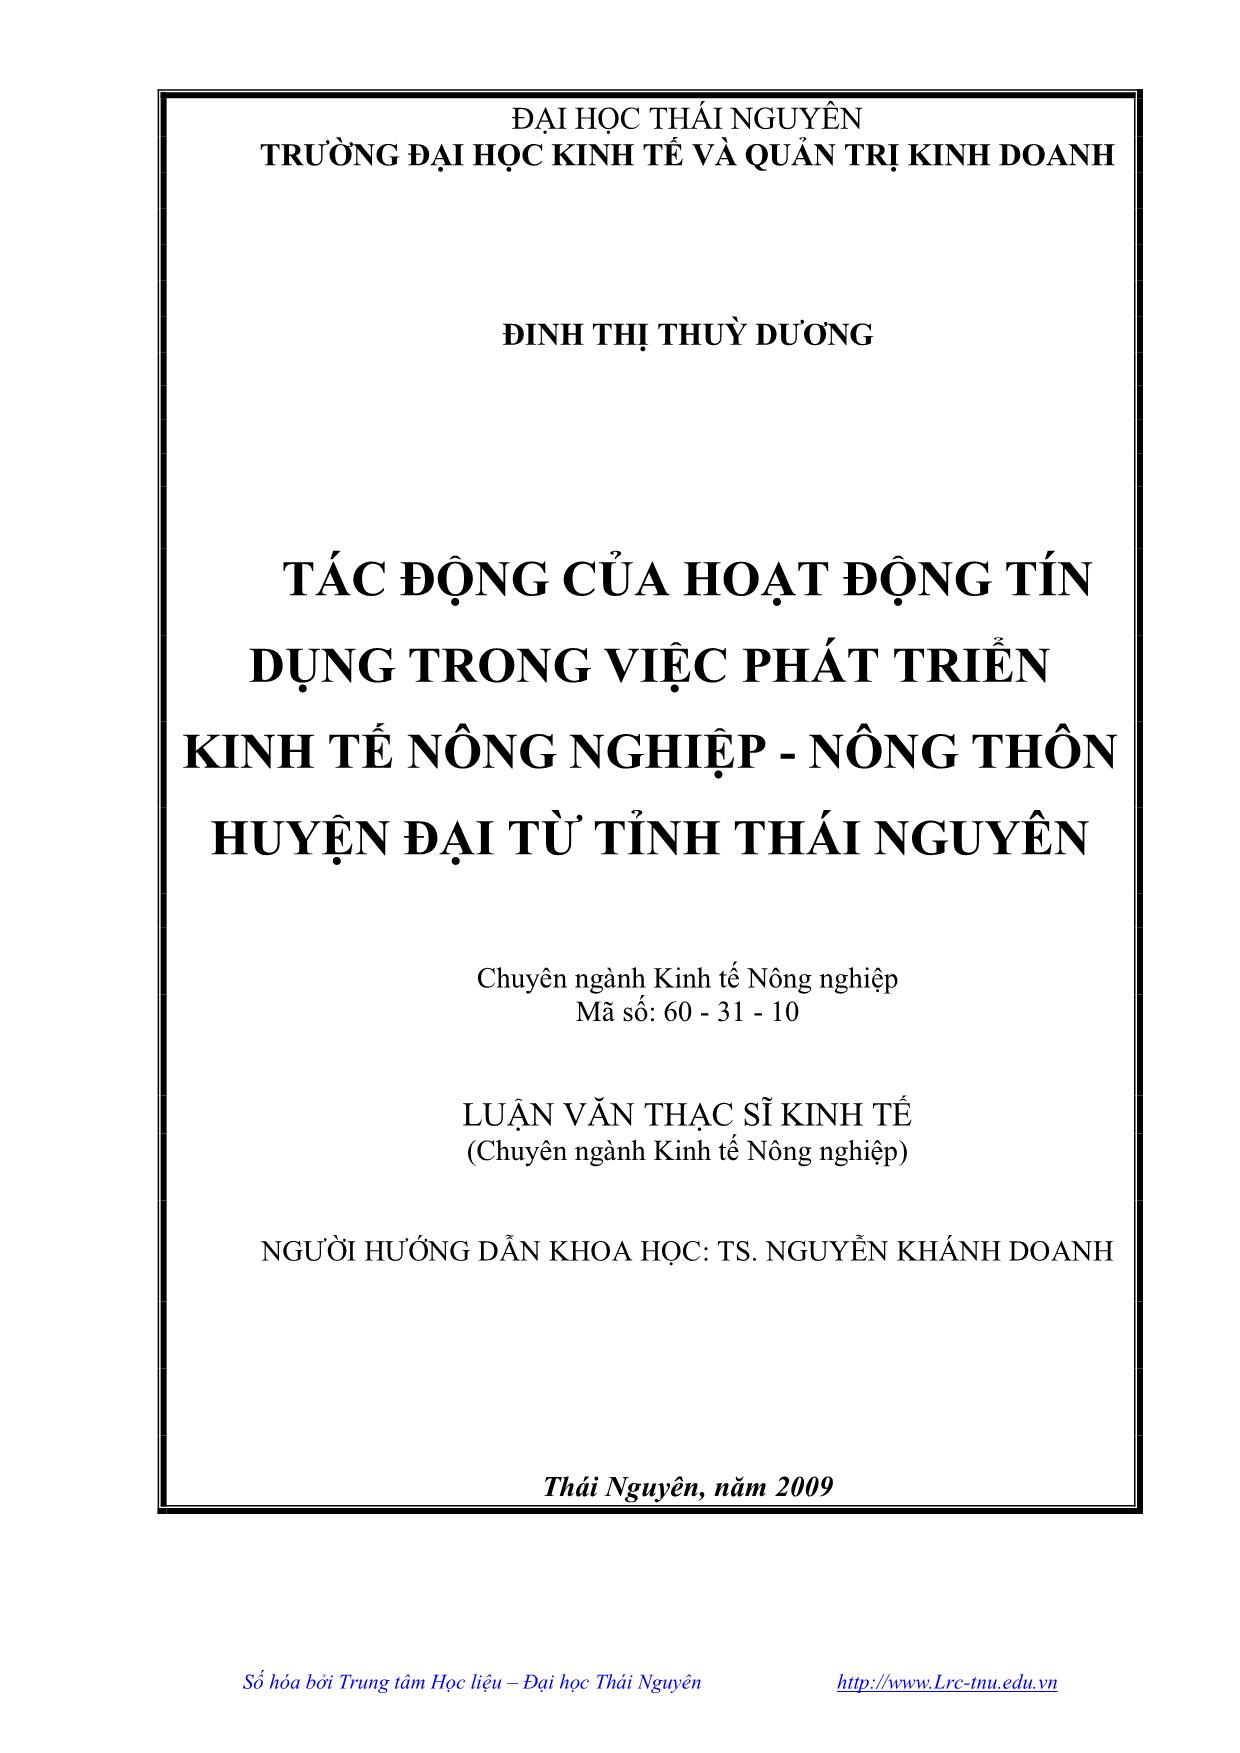 Luận văn Tác động của hoạt động tín dụng trong việc phát triển kinh tế nông nghiệp, nông thôn huyện Đại Từ, tỉnh Thái Nguyên trang 2